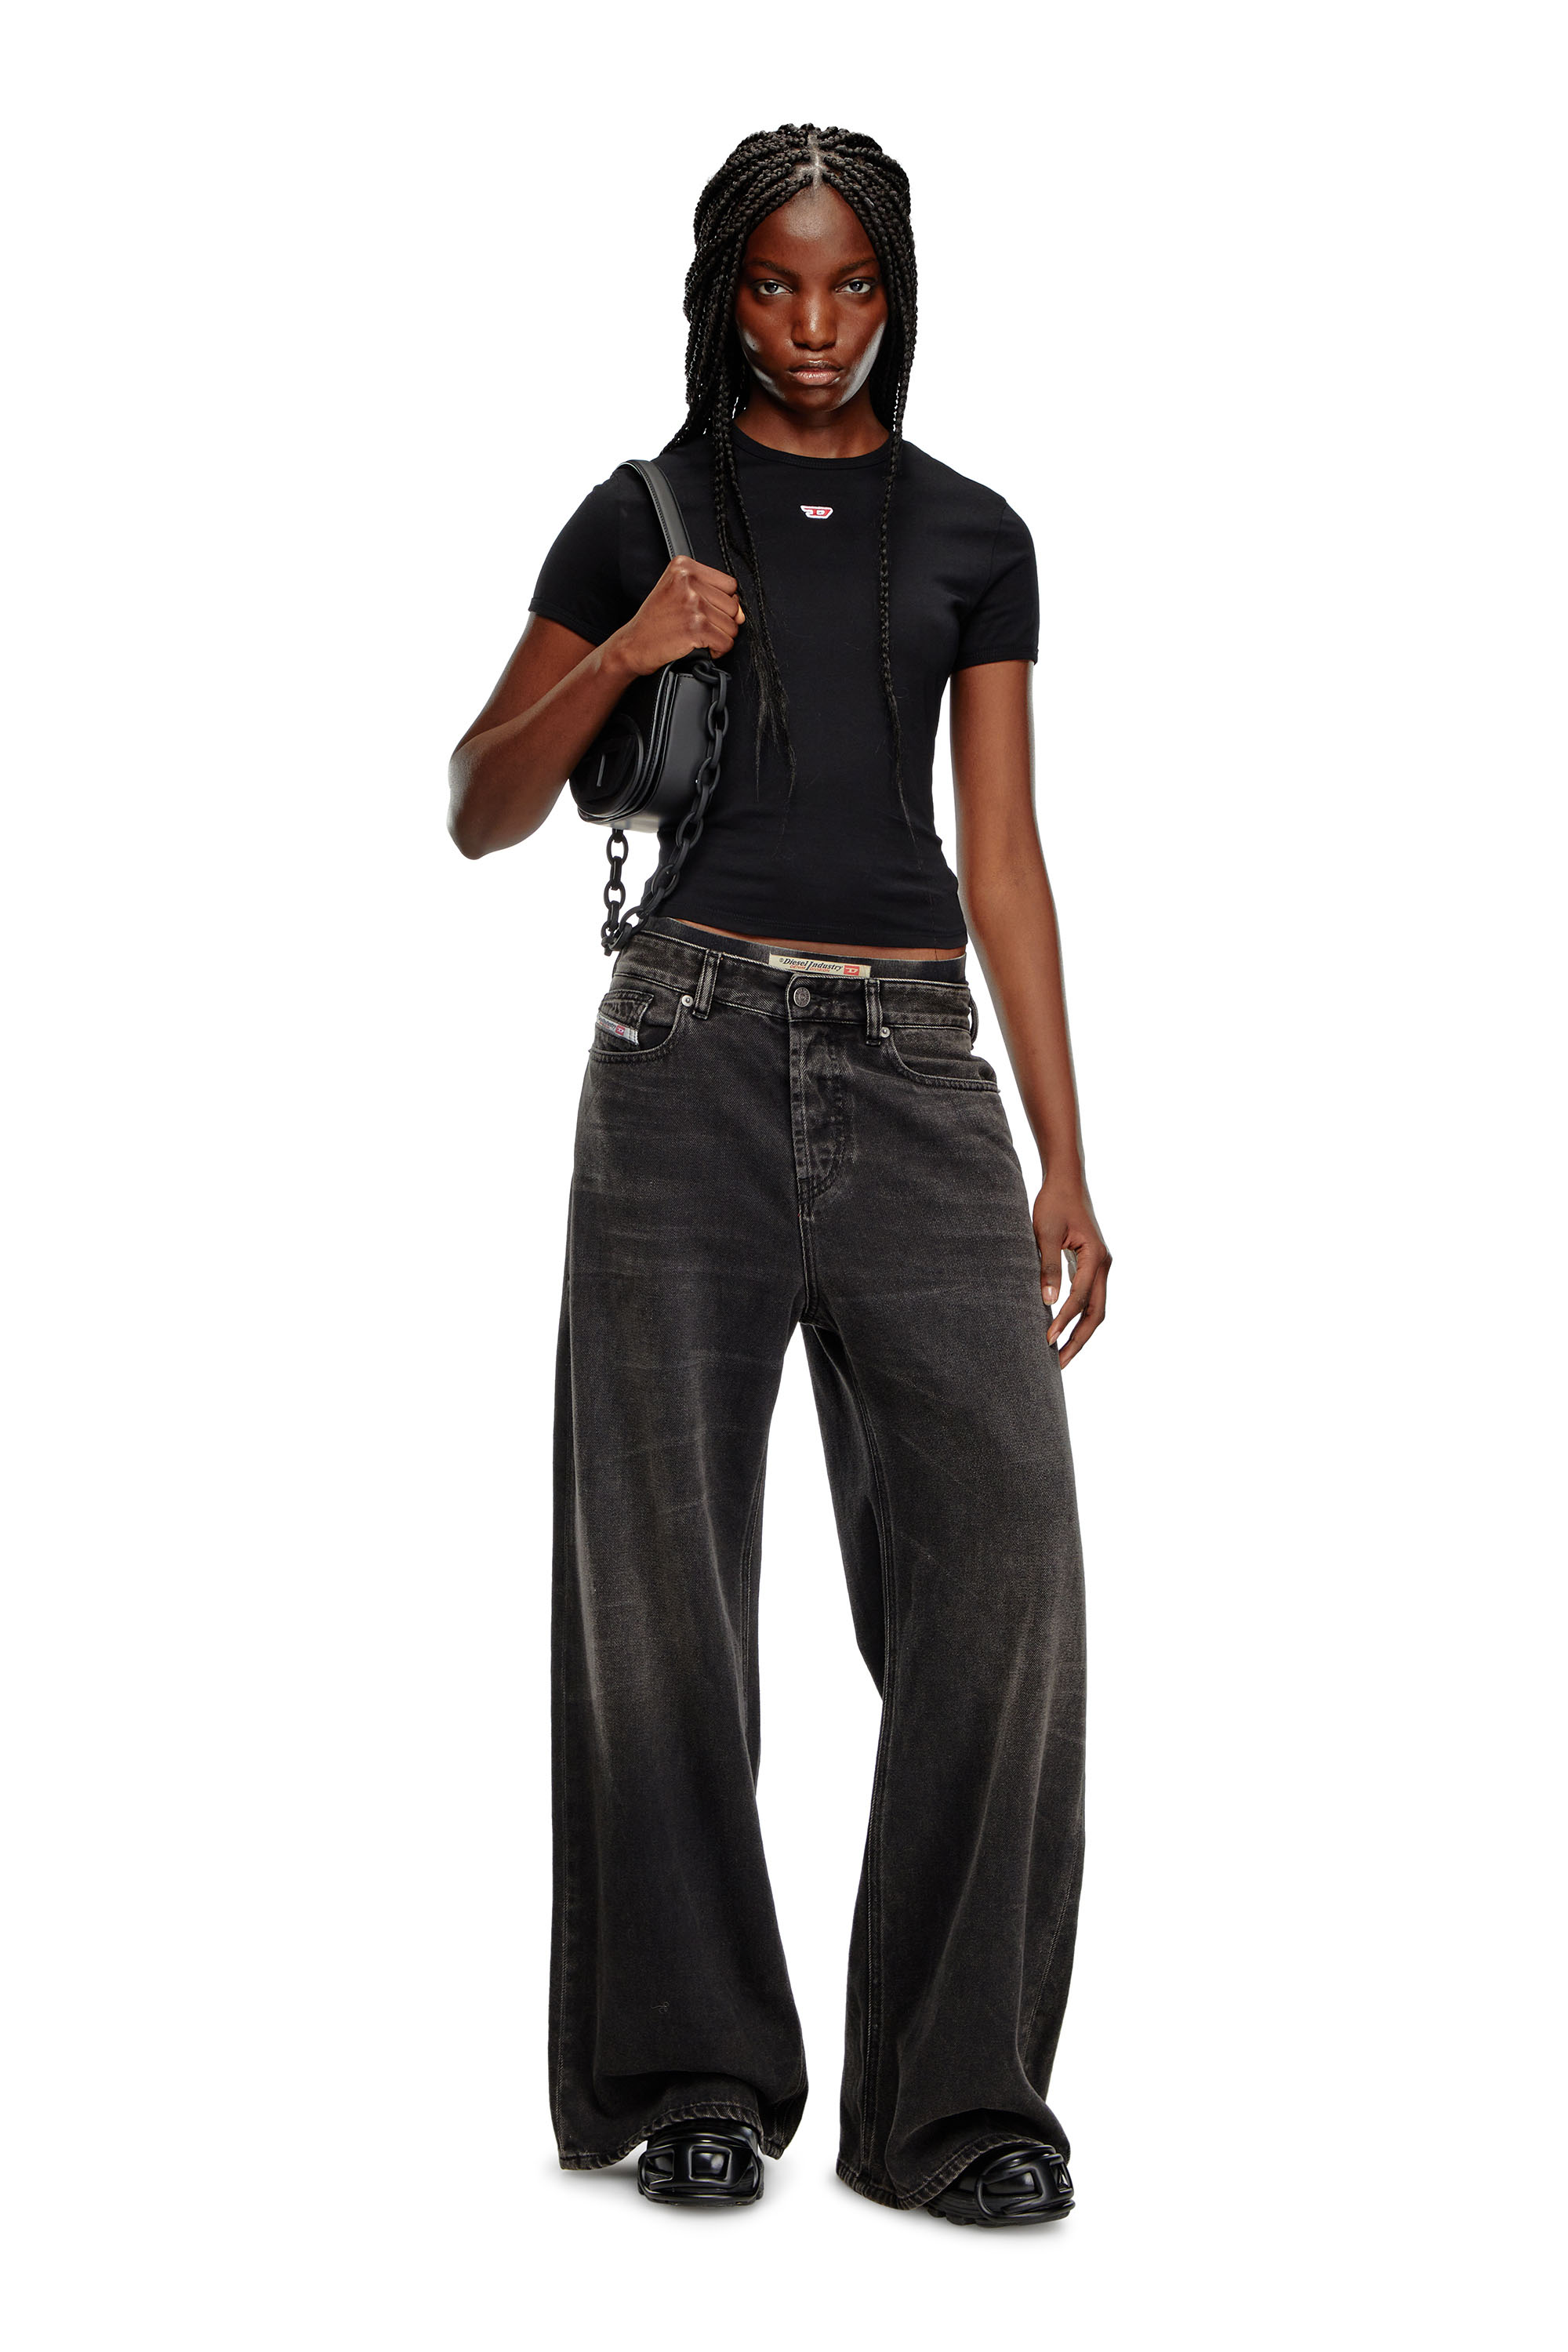 Diesel - T-UNCUTIE-LONG-D, Mujer Camiseta con parche D bordado in Negro - Image 2